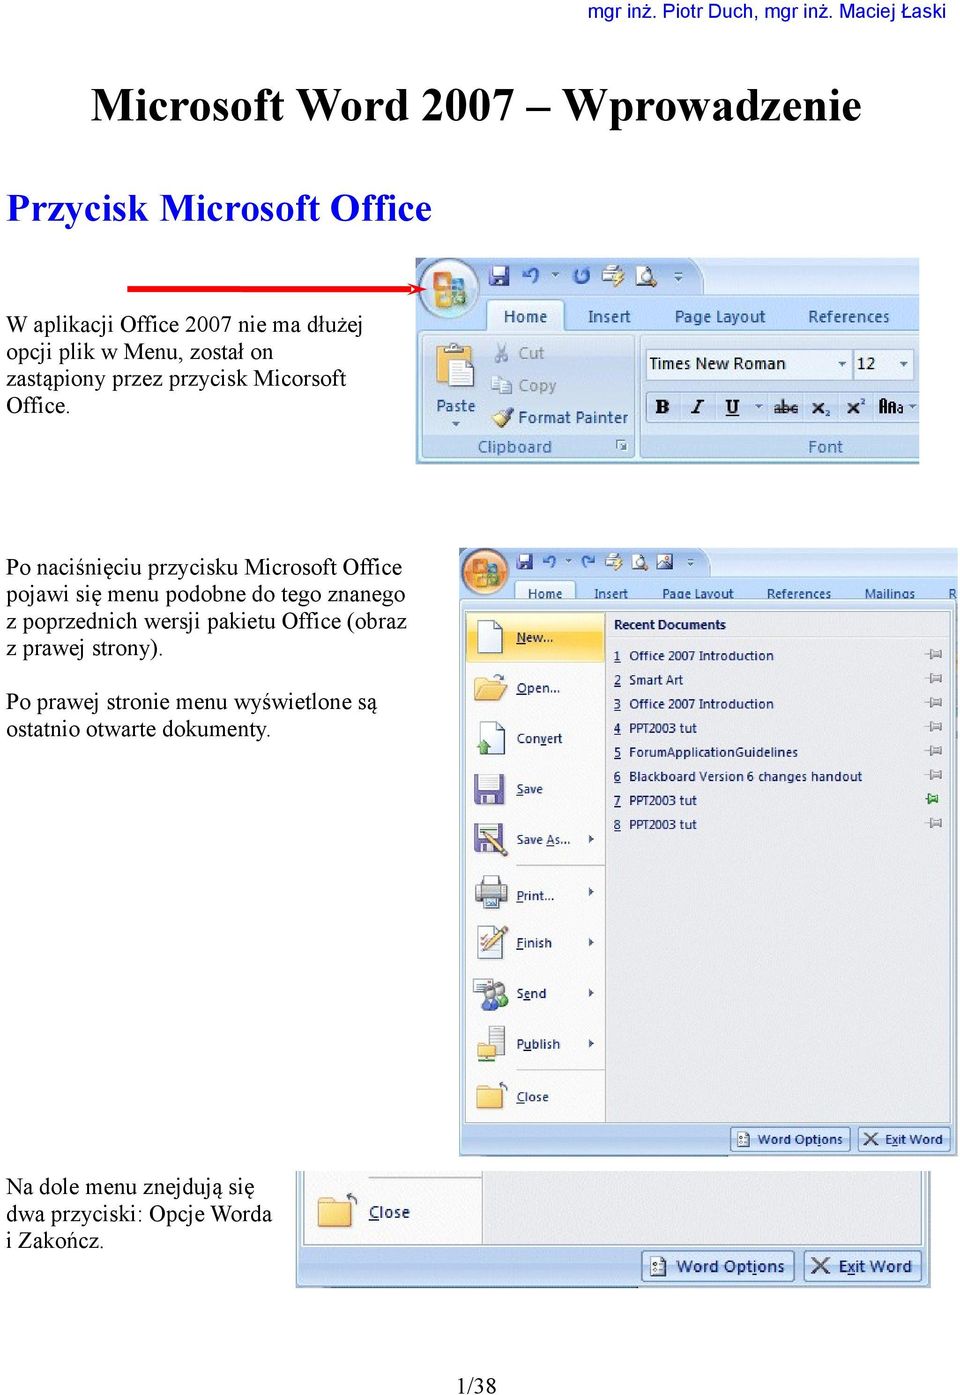 Po naciśnięciu przycisku Microsoft Office pojawi się menu podobne do tego znanego z poprzednich wersji pakietu